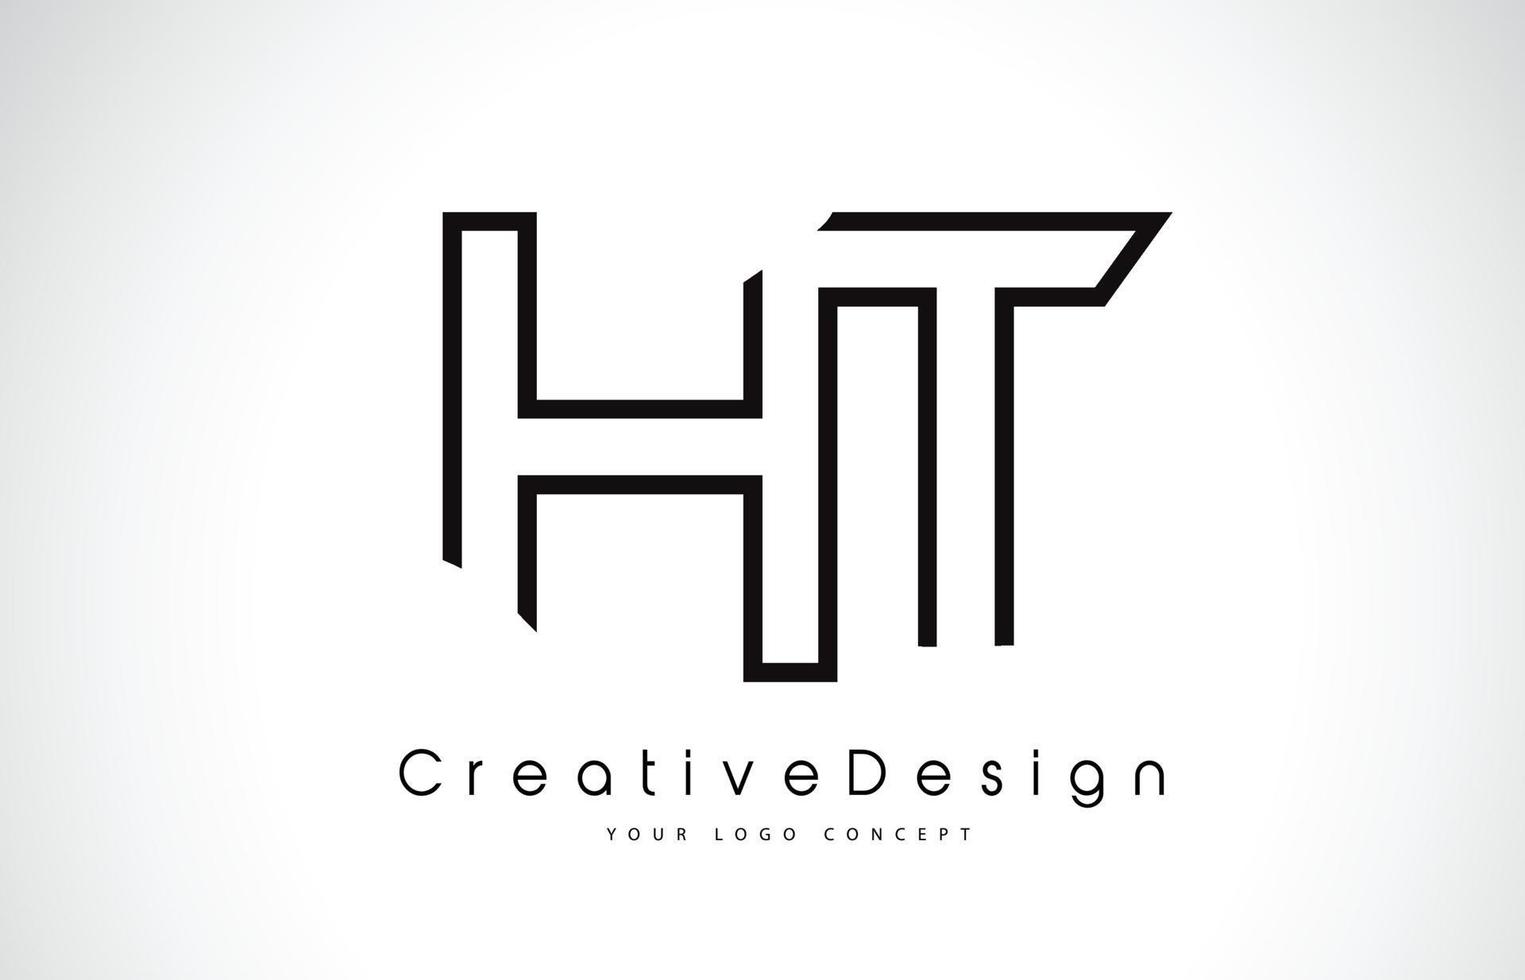 création de logo de lettre ht ht en couleurs noires. vecteur